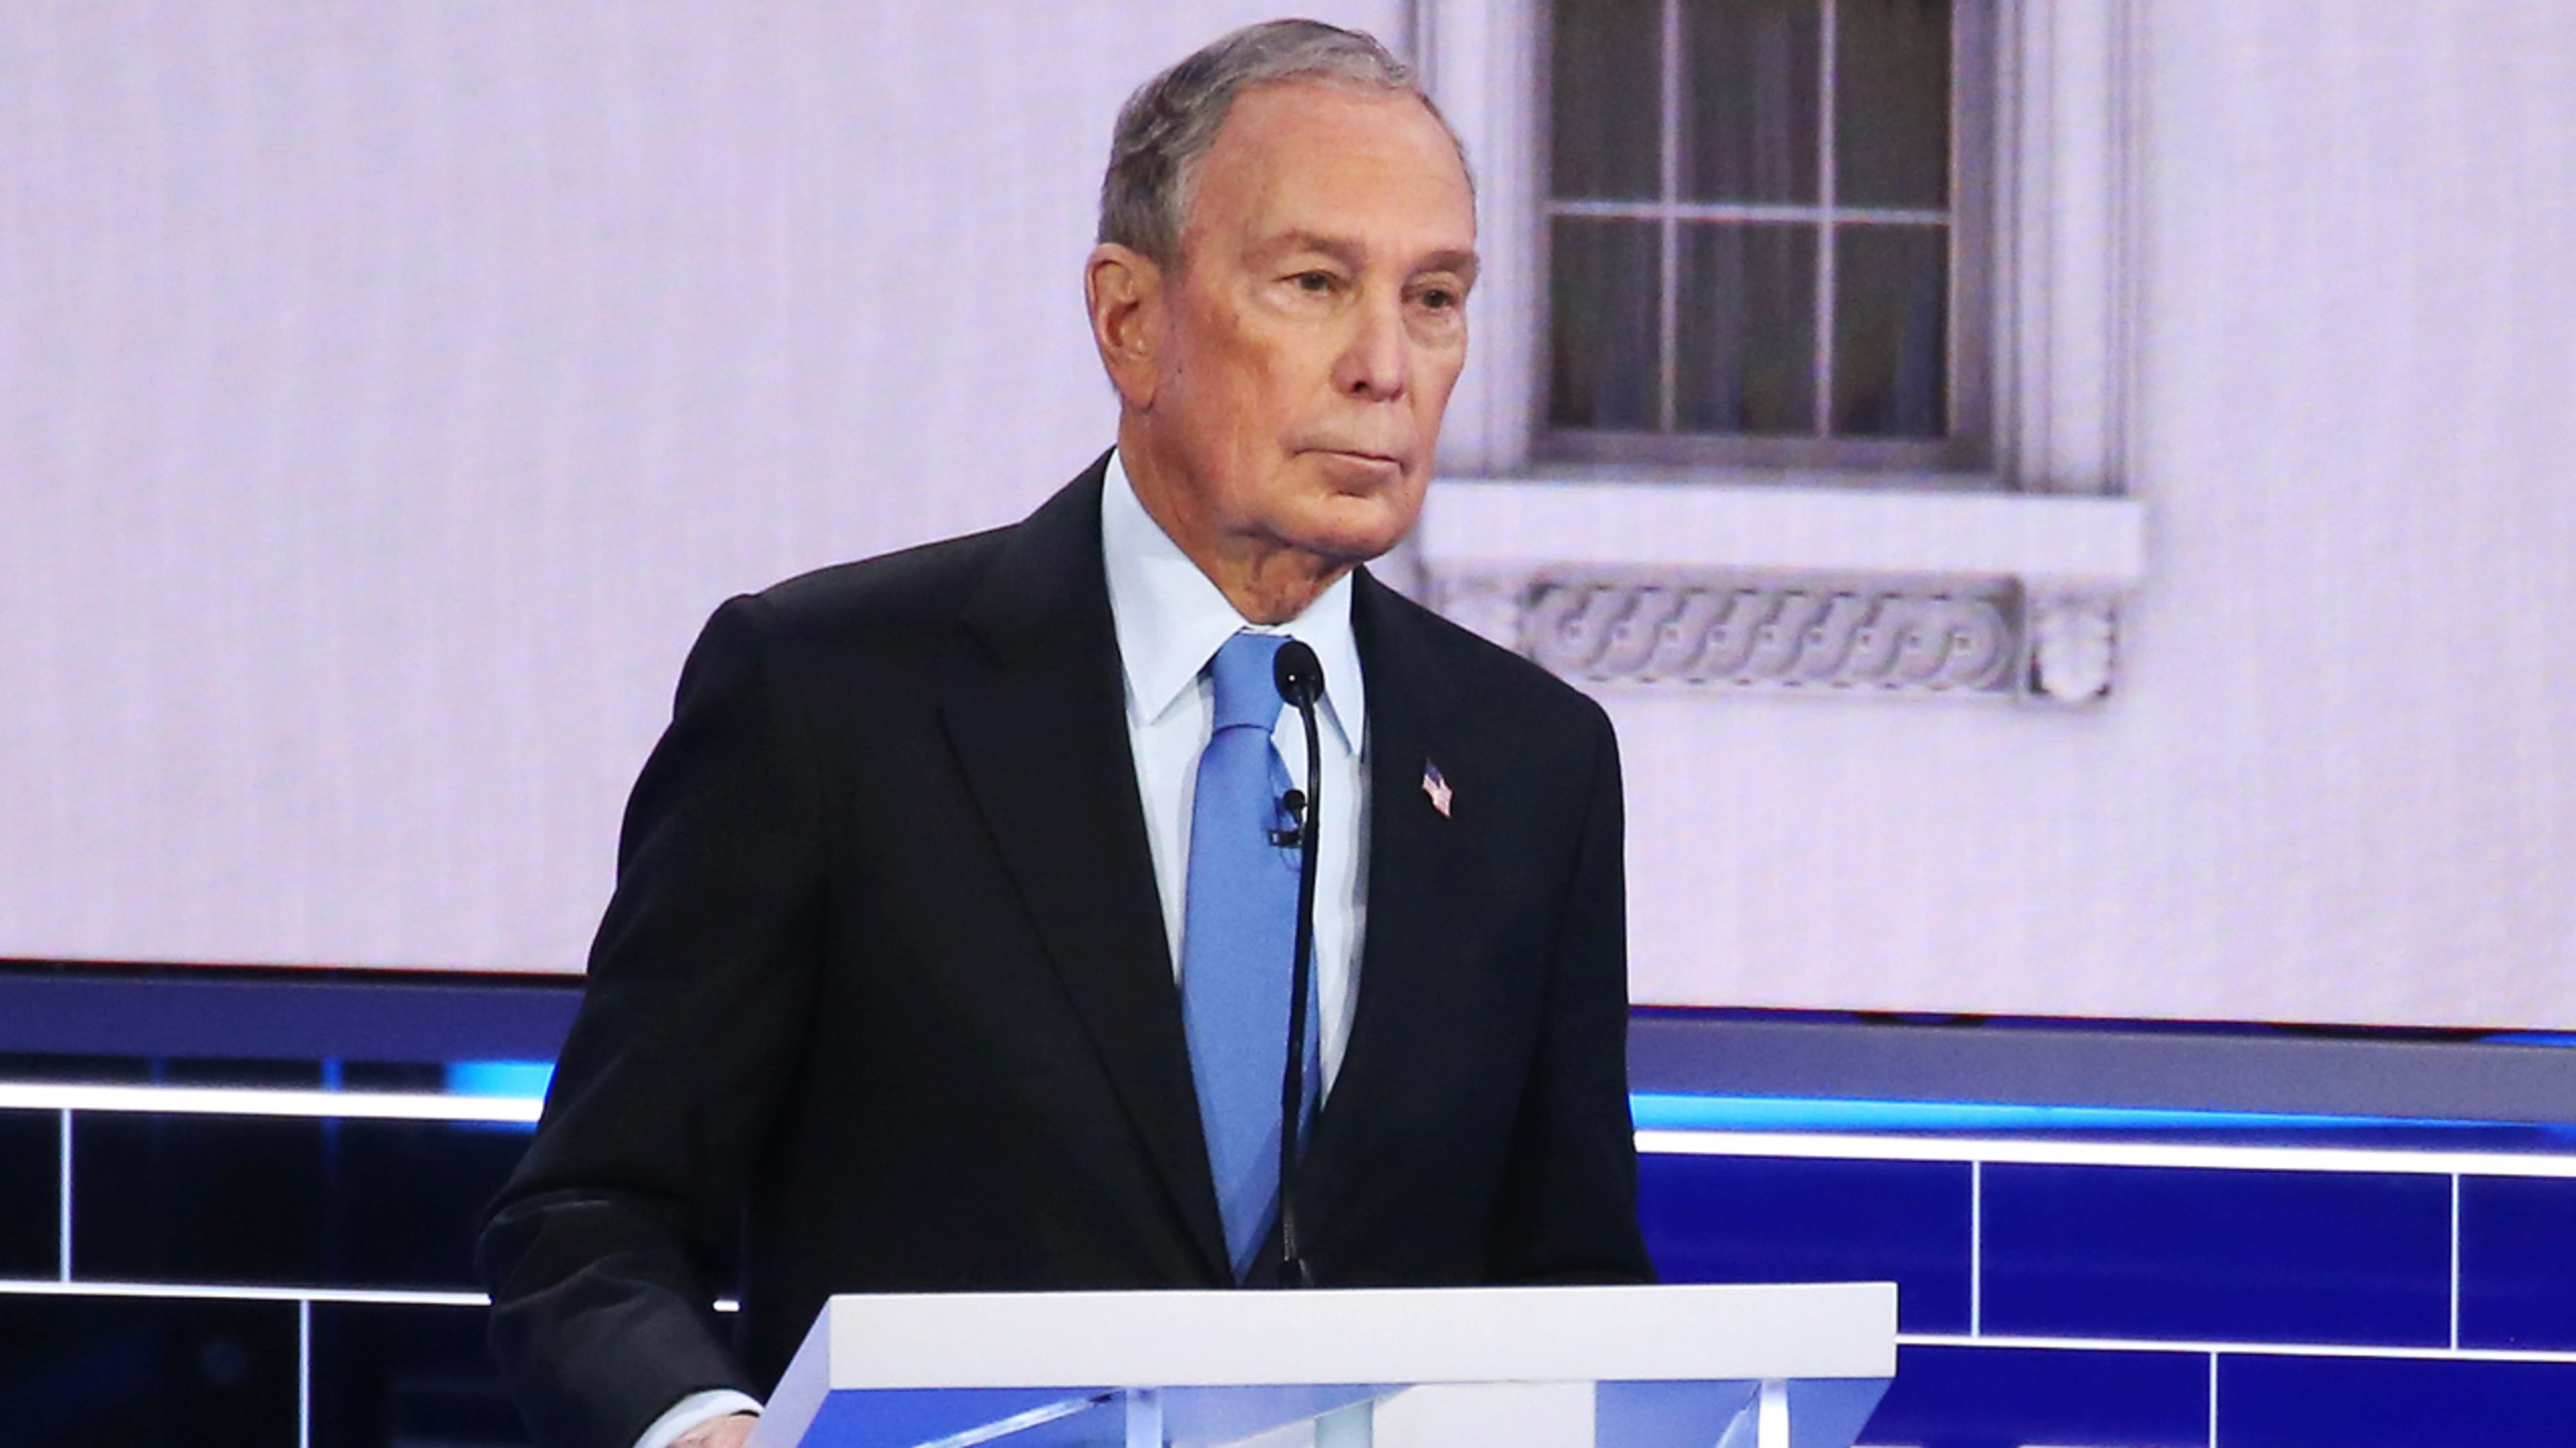 Bloomberg’s debate video is part stale joke, part misinformation